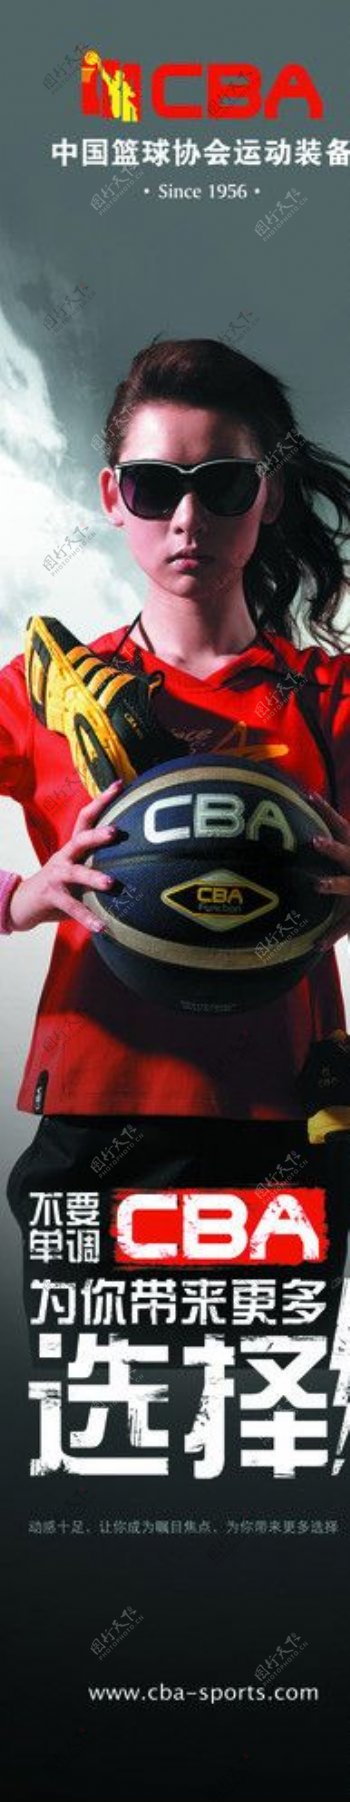 CBA篮球运动装备图片